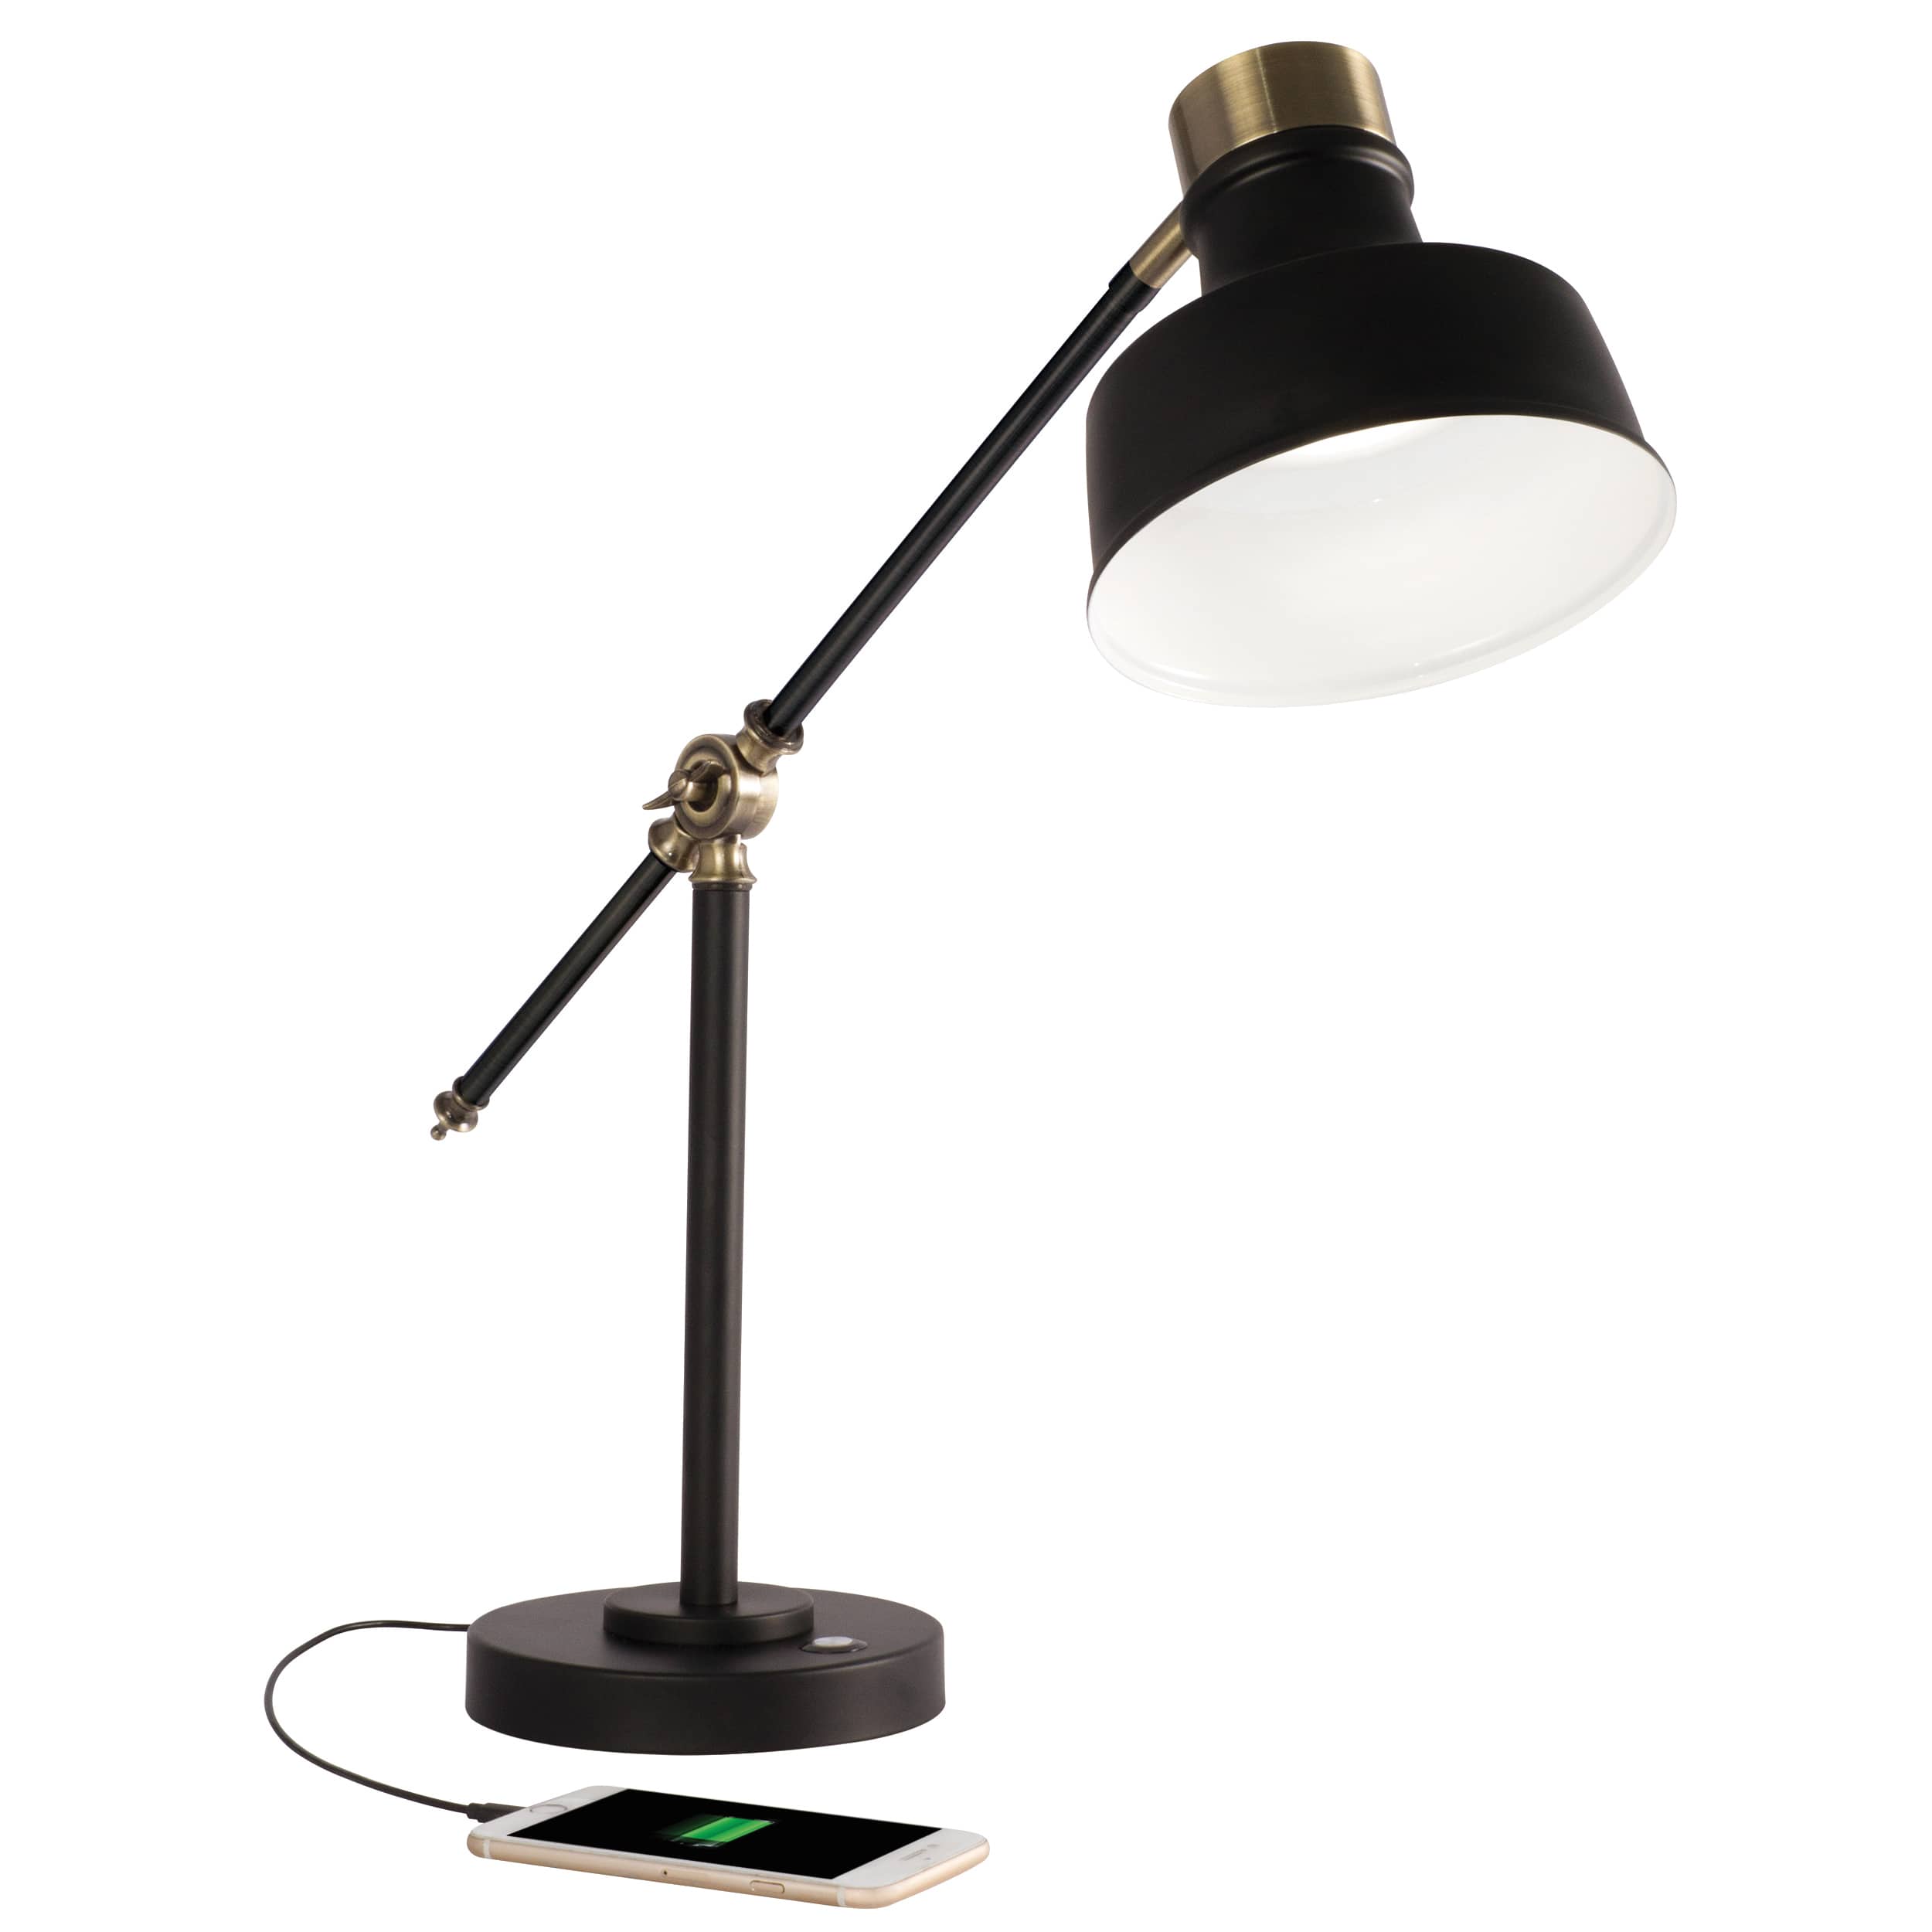 OttLite Wellness Series Balance LED Desk Lamp